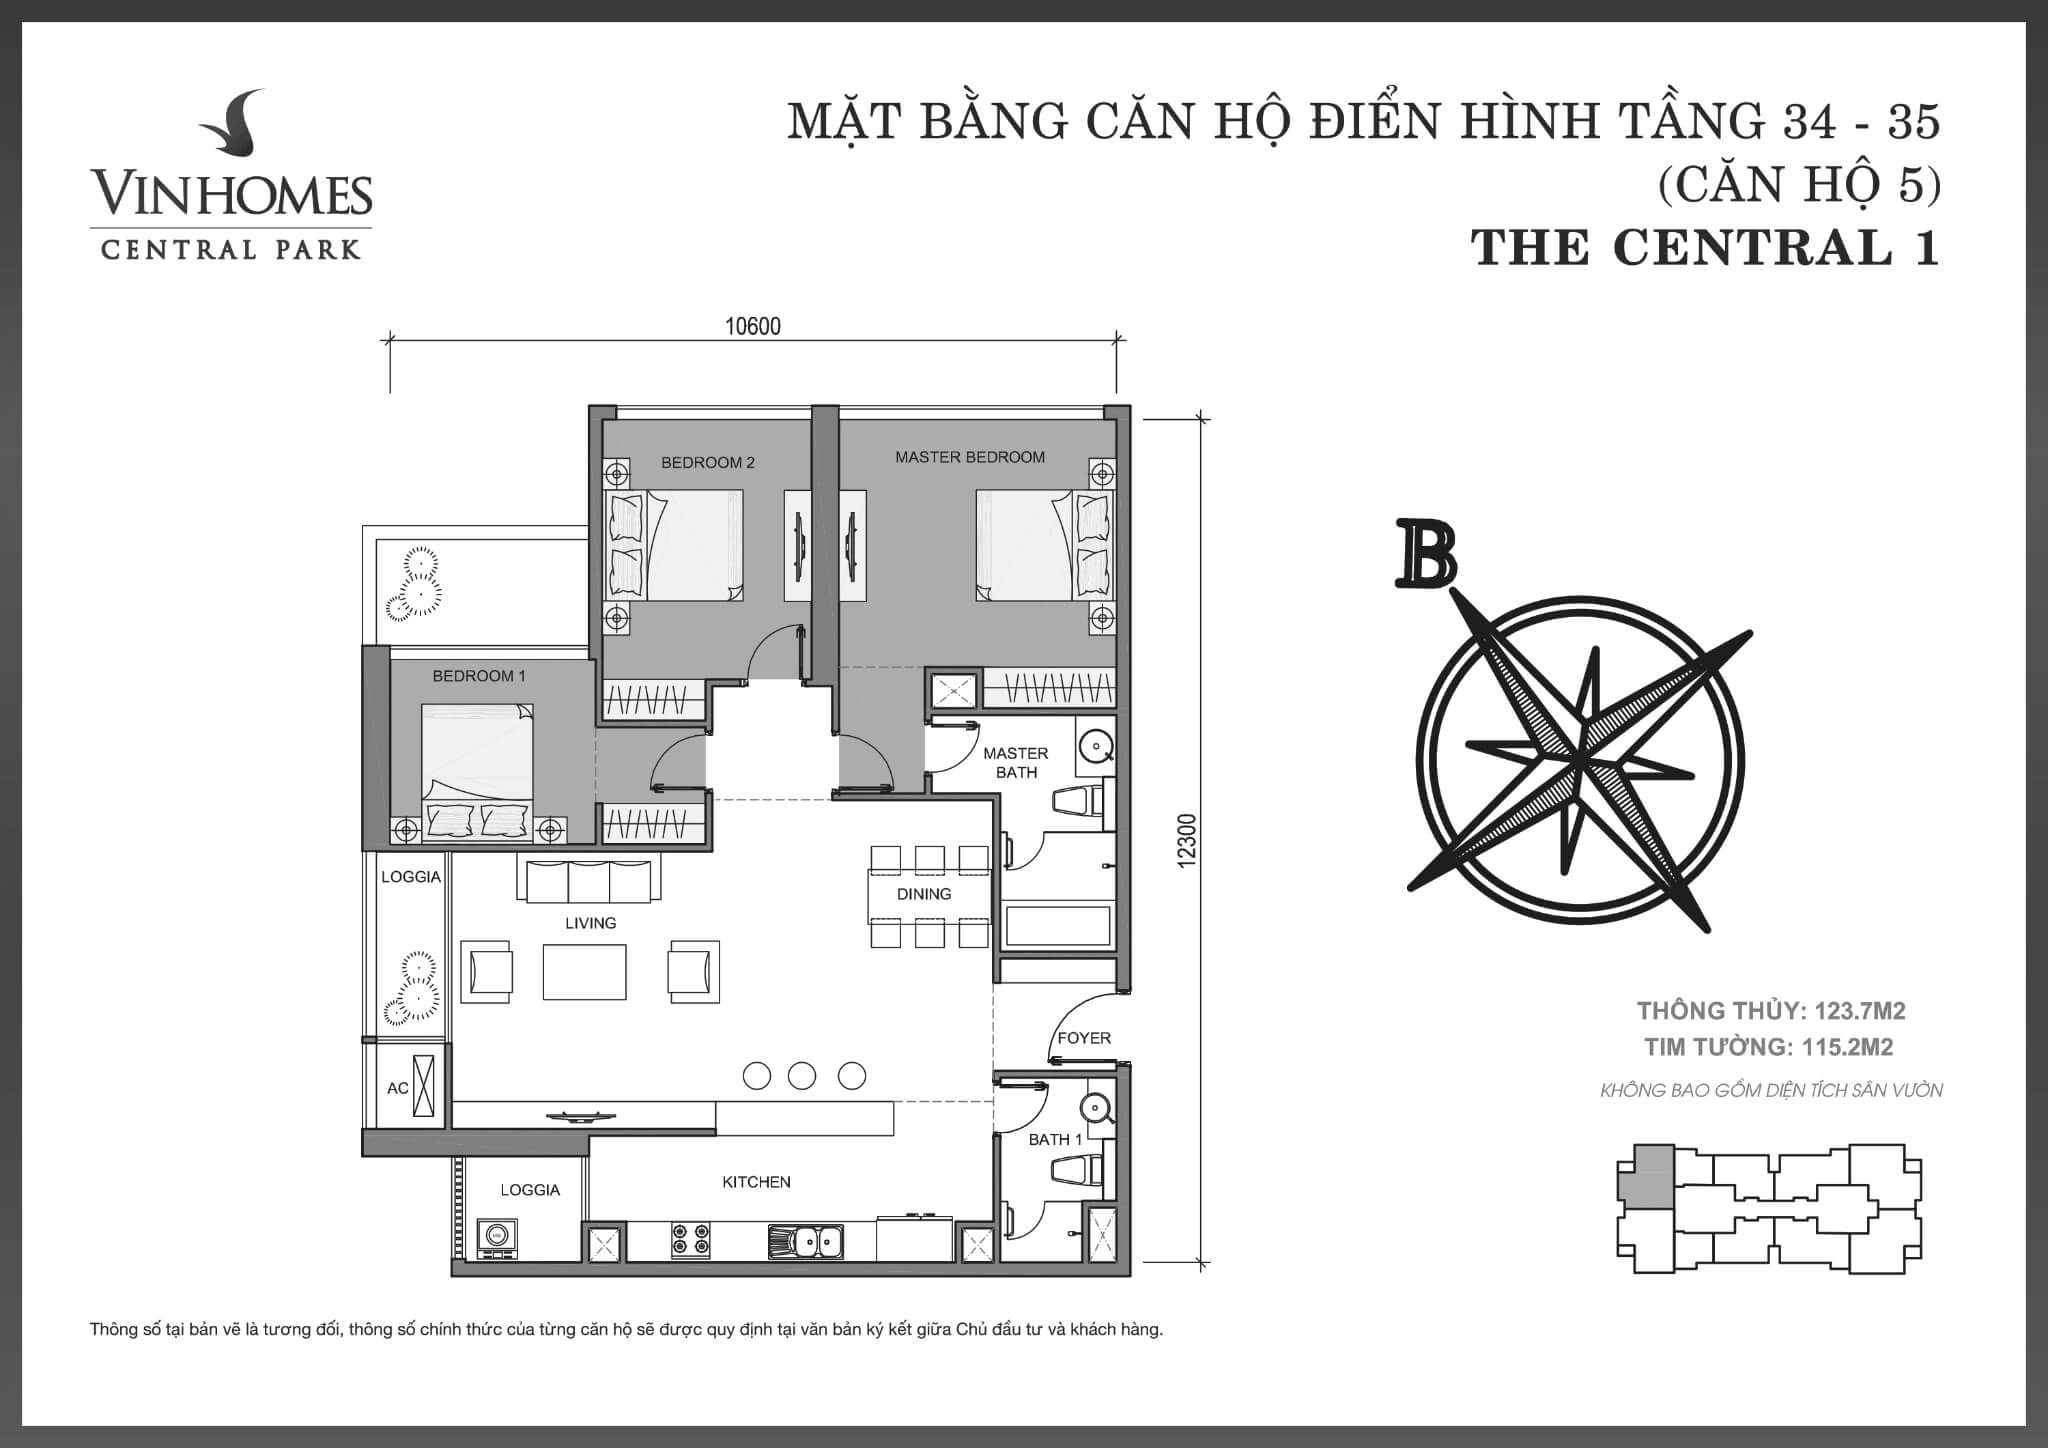 layout căn hộ số 5 tầng 34-35 Central 1